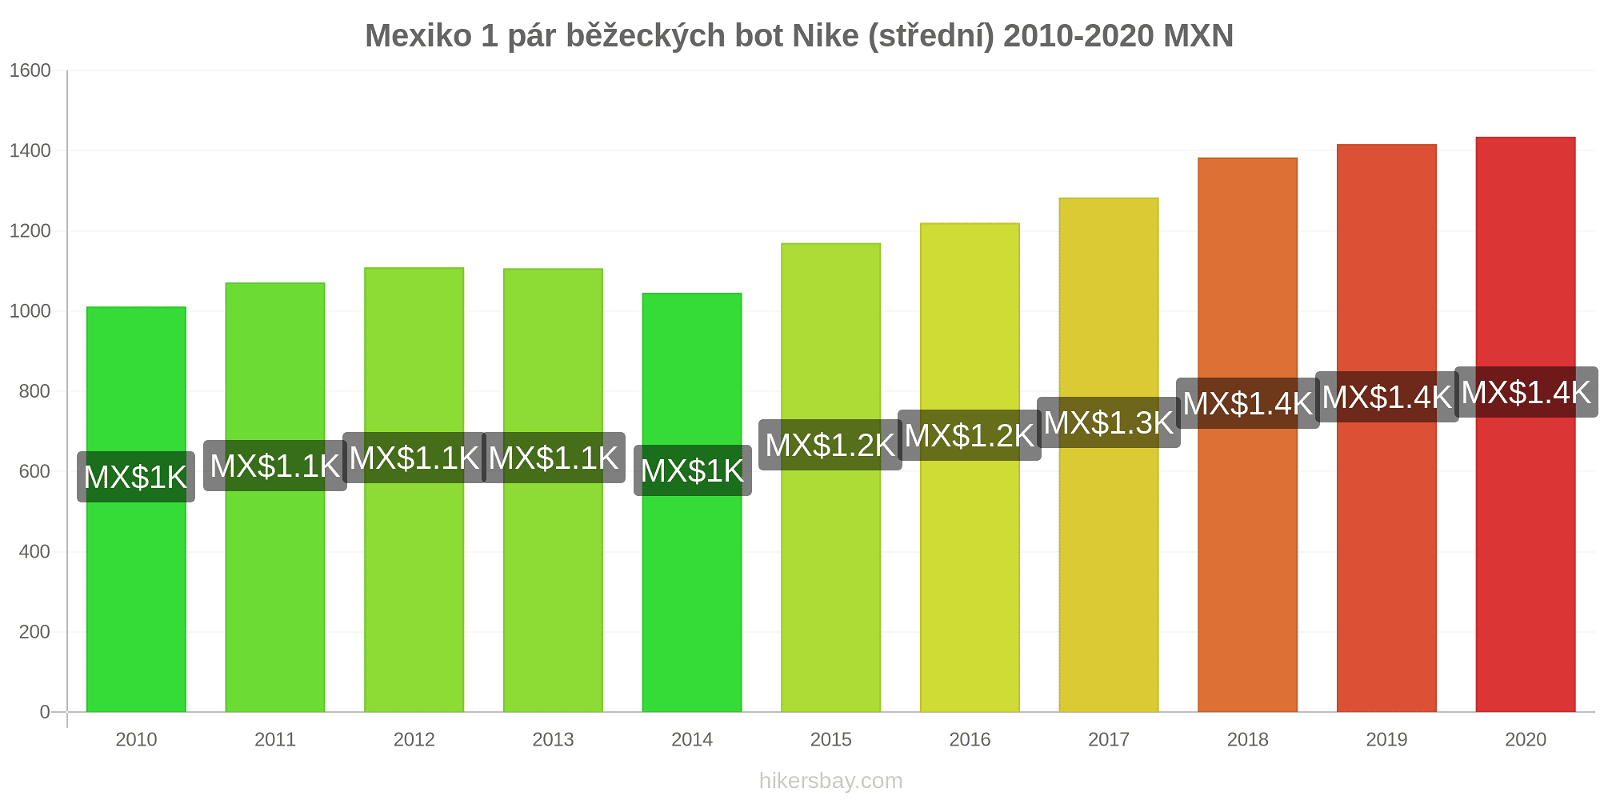 Mexiko změny cen 1 pár běžeckých bot Nike (střední) hikersbay.com